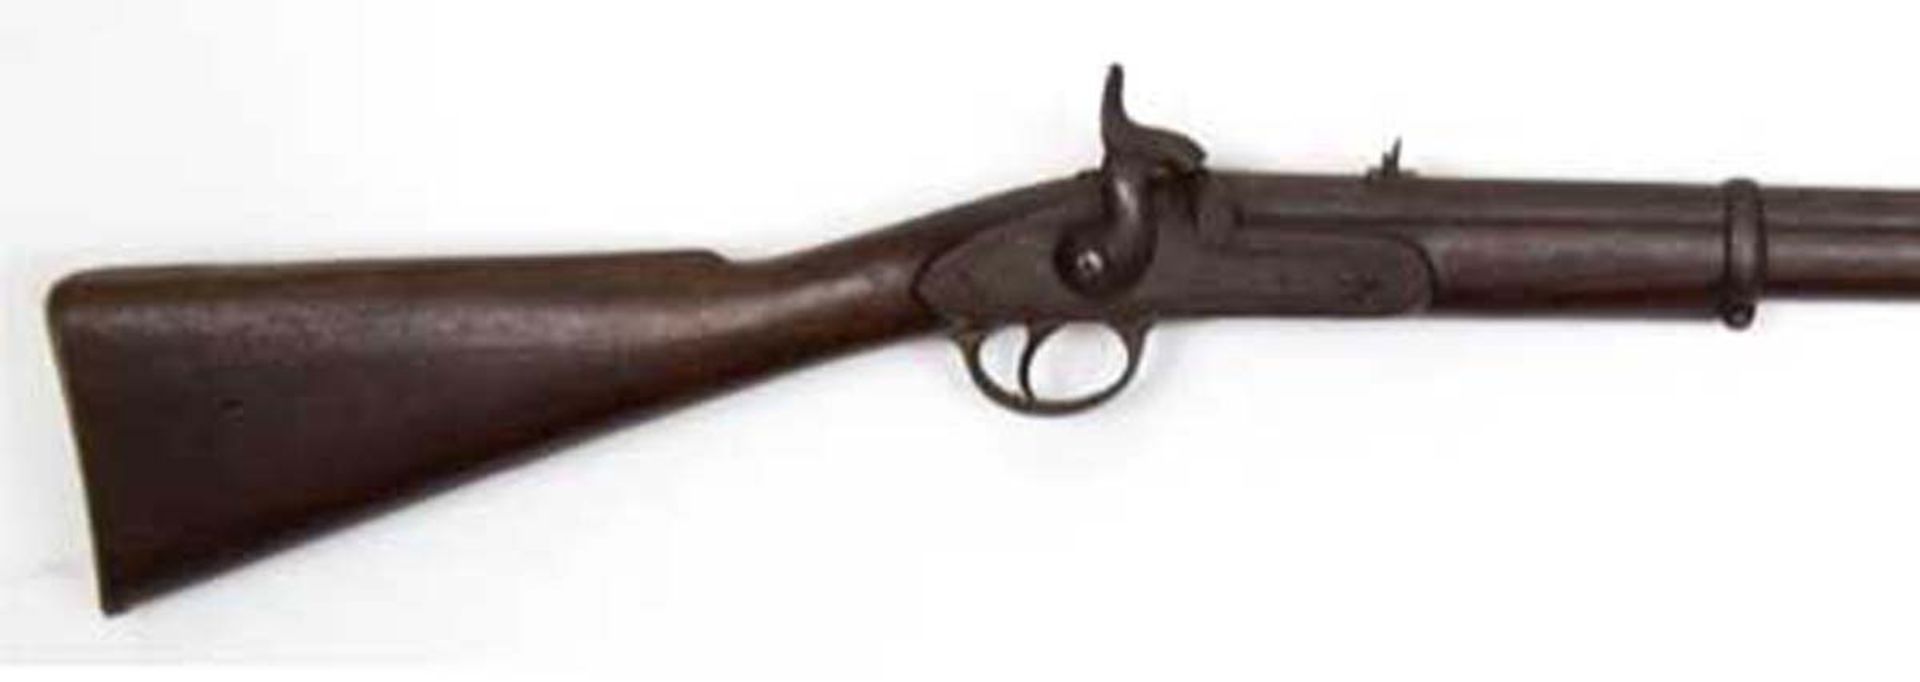 Vorderlader-Gewehr, mit Perkussinsschloß, Schaftung aus Holz, Herstellung von Tower,Baujahr 1861,